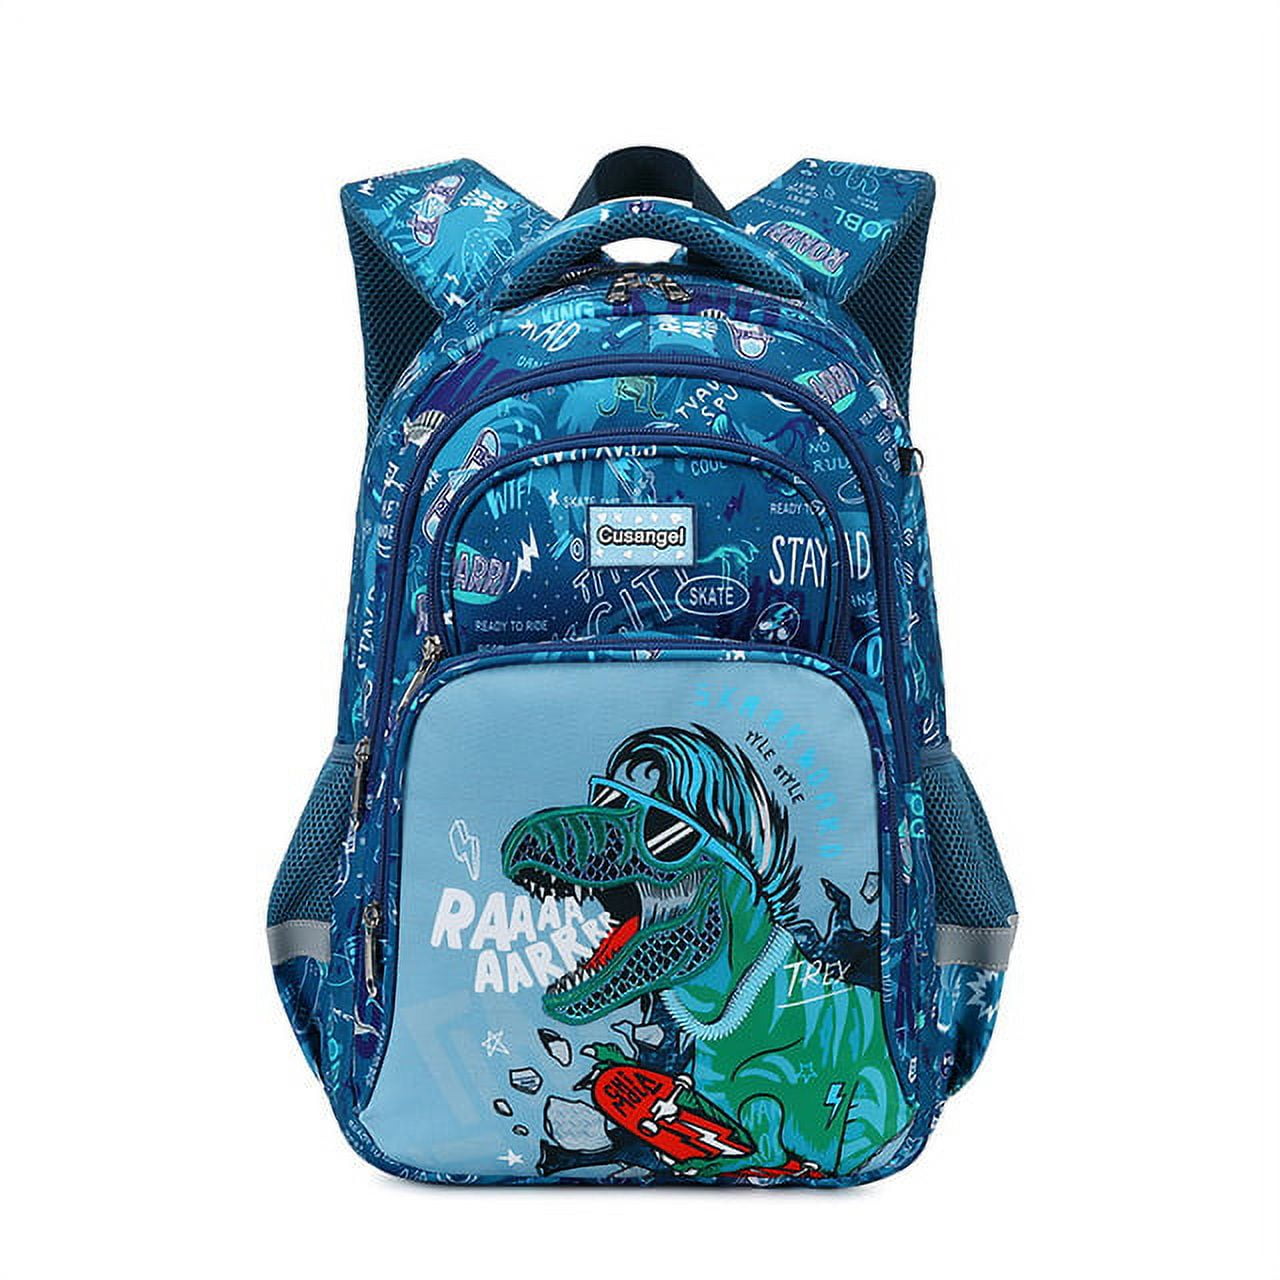 Kid's Dinosaur 3 in 1 Backpack Set Lovely Durable Bookbag Lunch